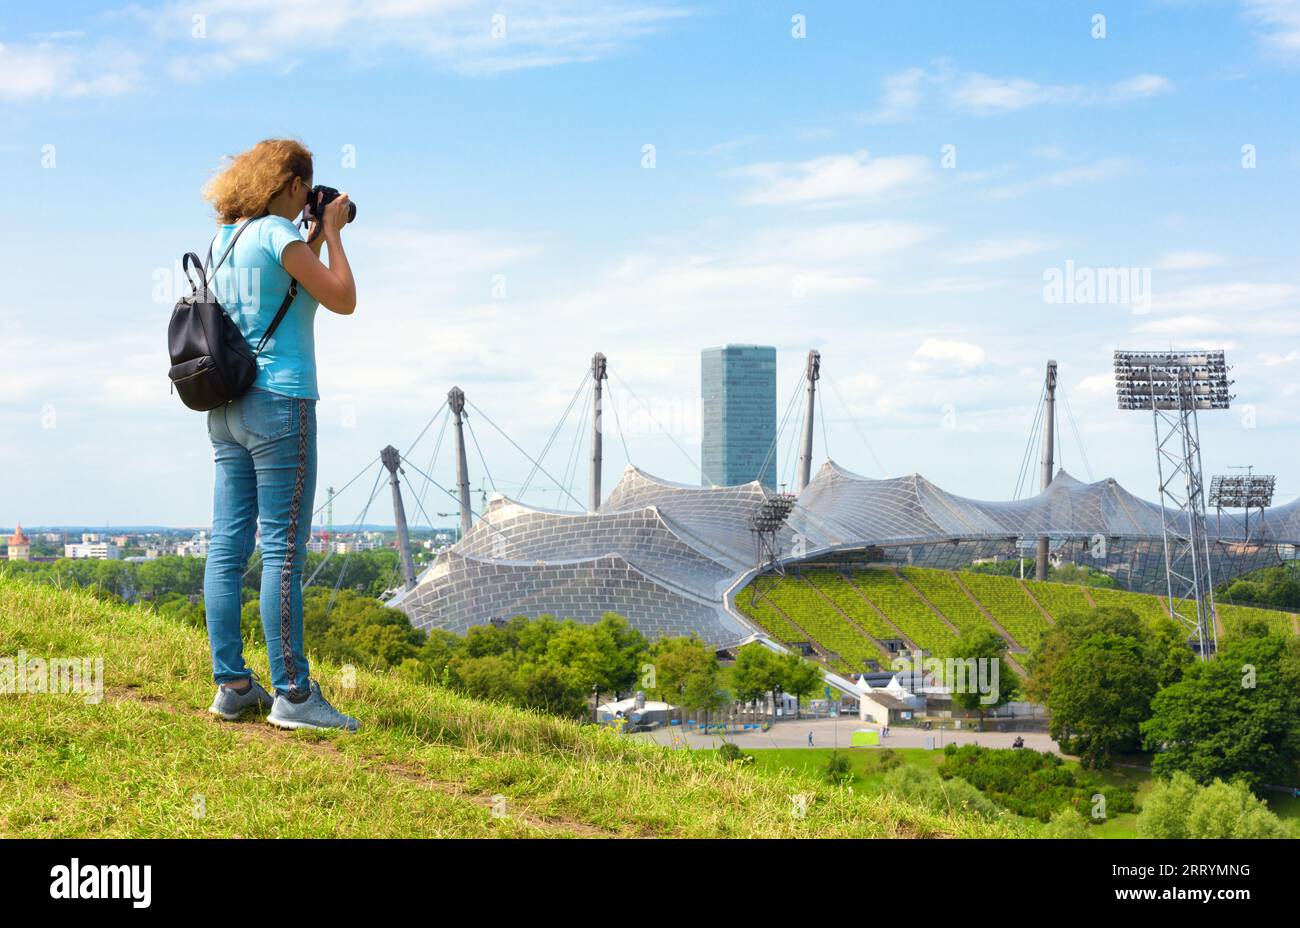 Touriste féminine prend des photos du parc olympique en été, Munich, Allemagne. Cet endroit est célèbre point de repère de la ville de Munchen. Concept de gens de voyage, touri Banque D'Images